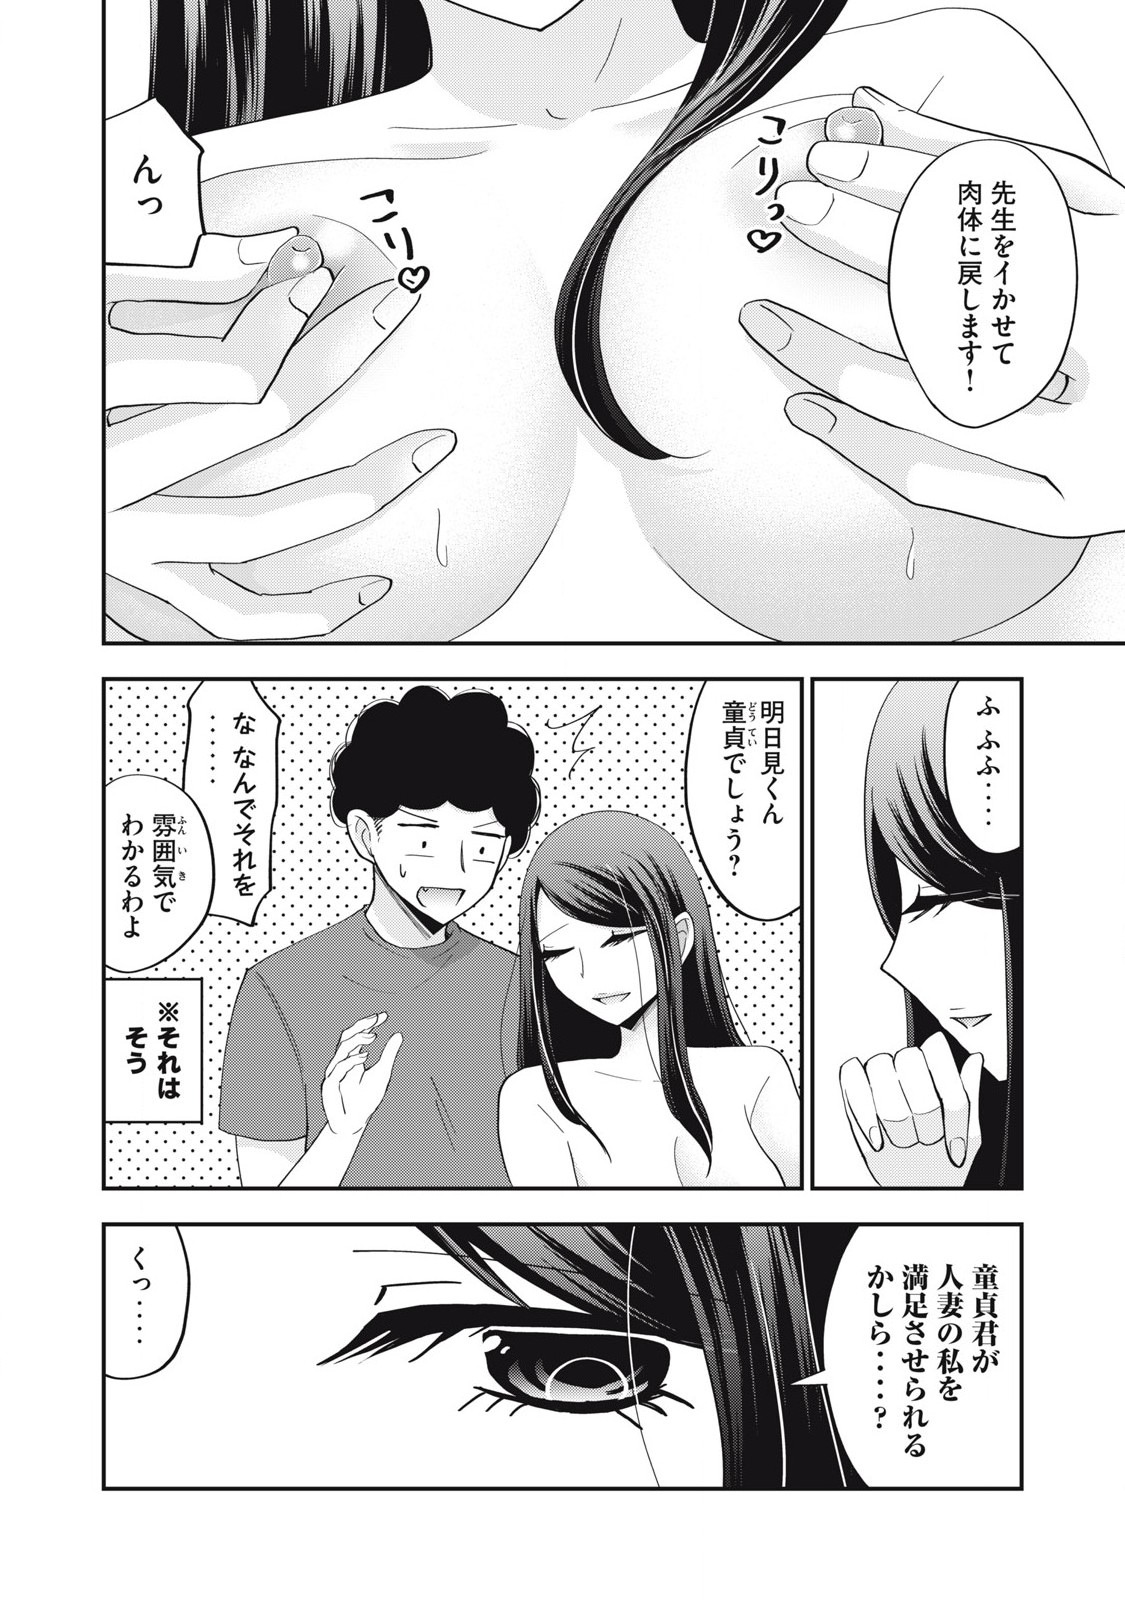 Yumeutsutsu no Hana no Sono - Chapter 25 - Page 12